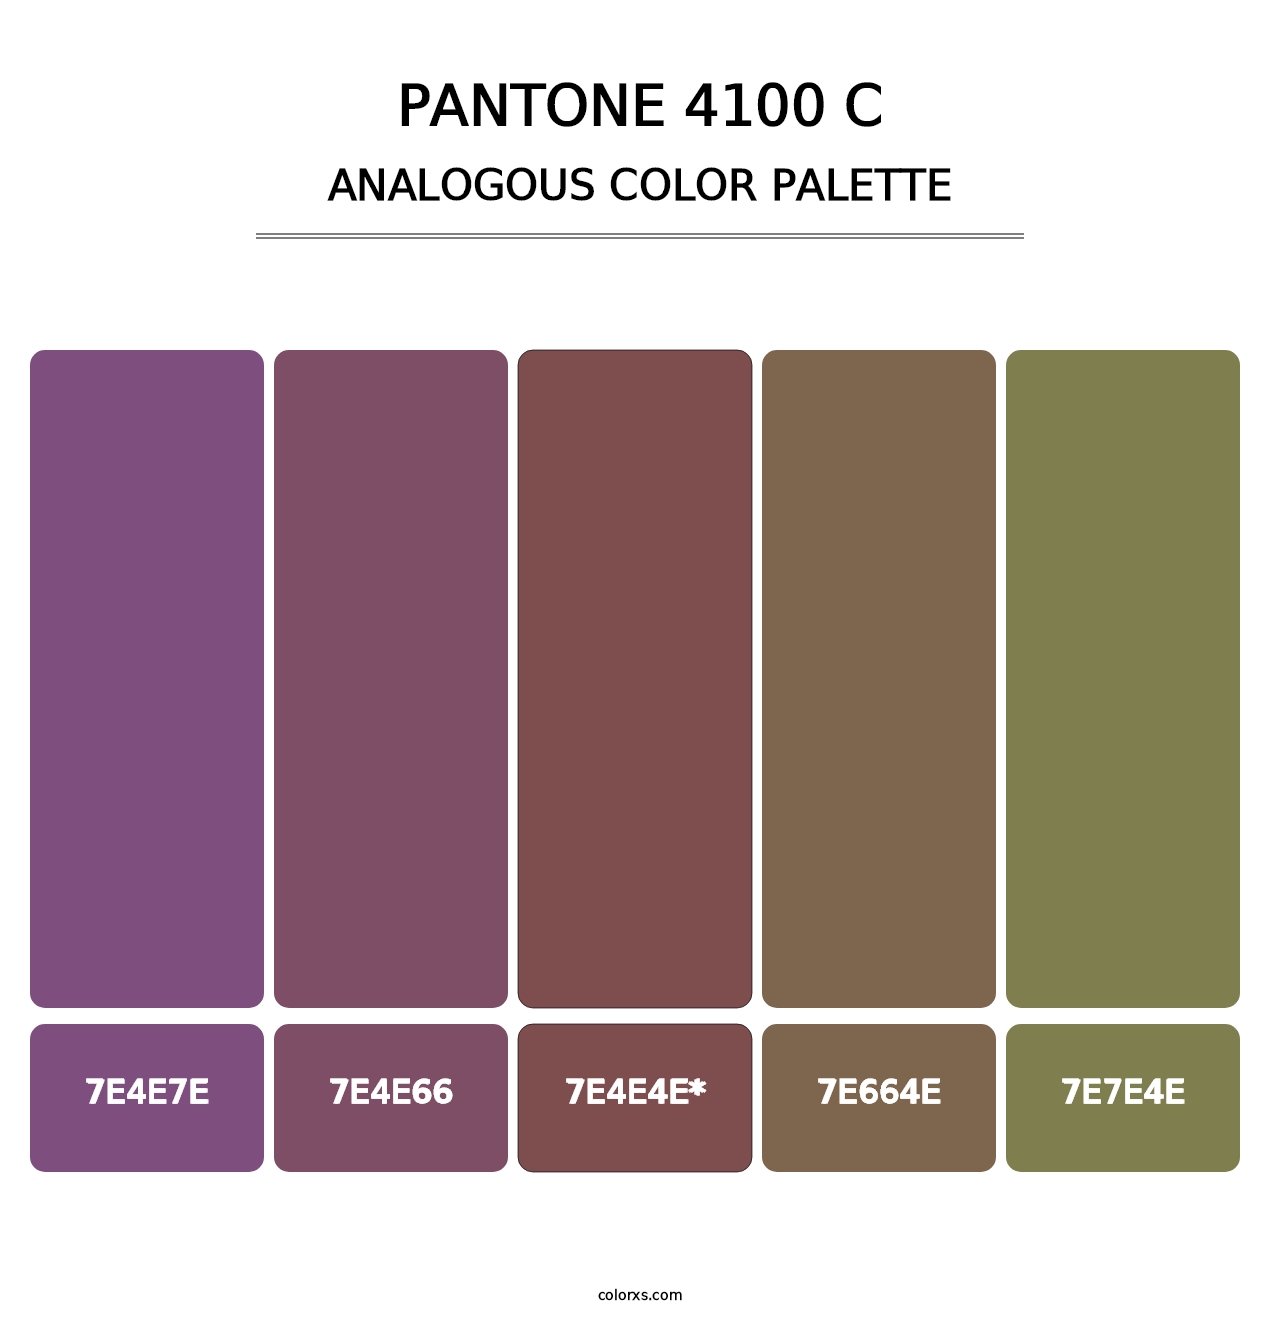 PANTONE 4100 C - Analogous Color Palette